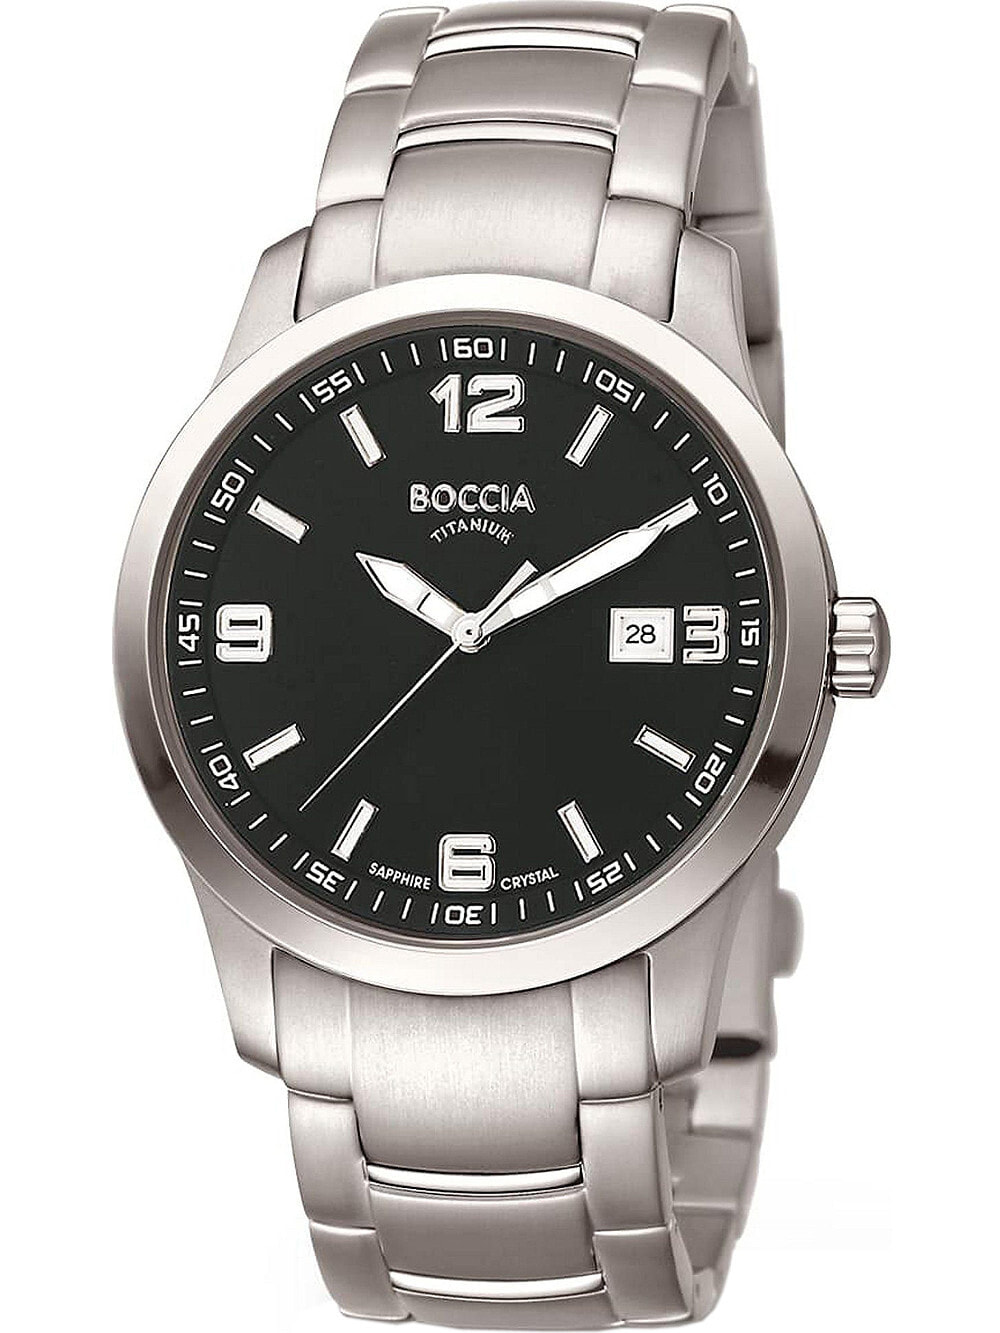 Мужские наручные часы с серебряным браслетом Boccia 3626-03 mens watch titanium 38mm 10ATM